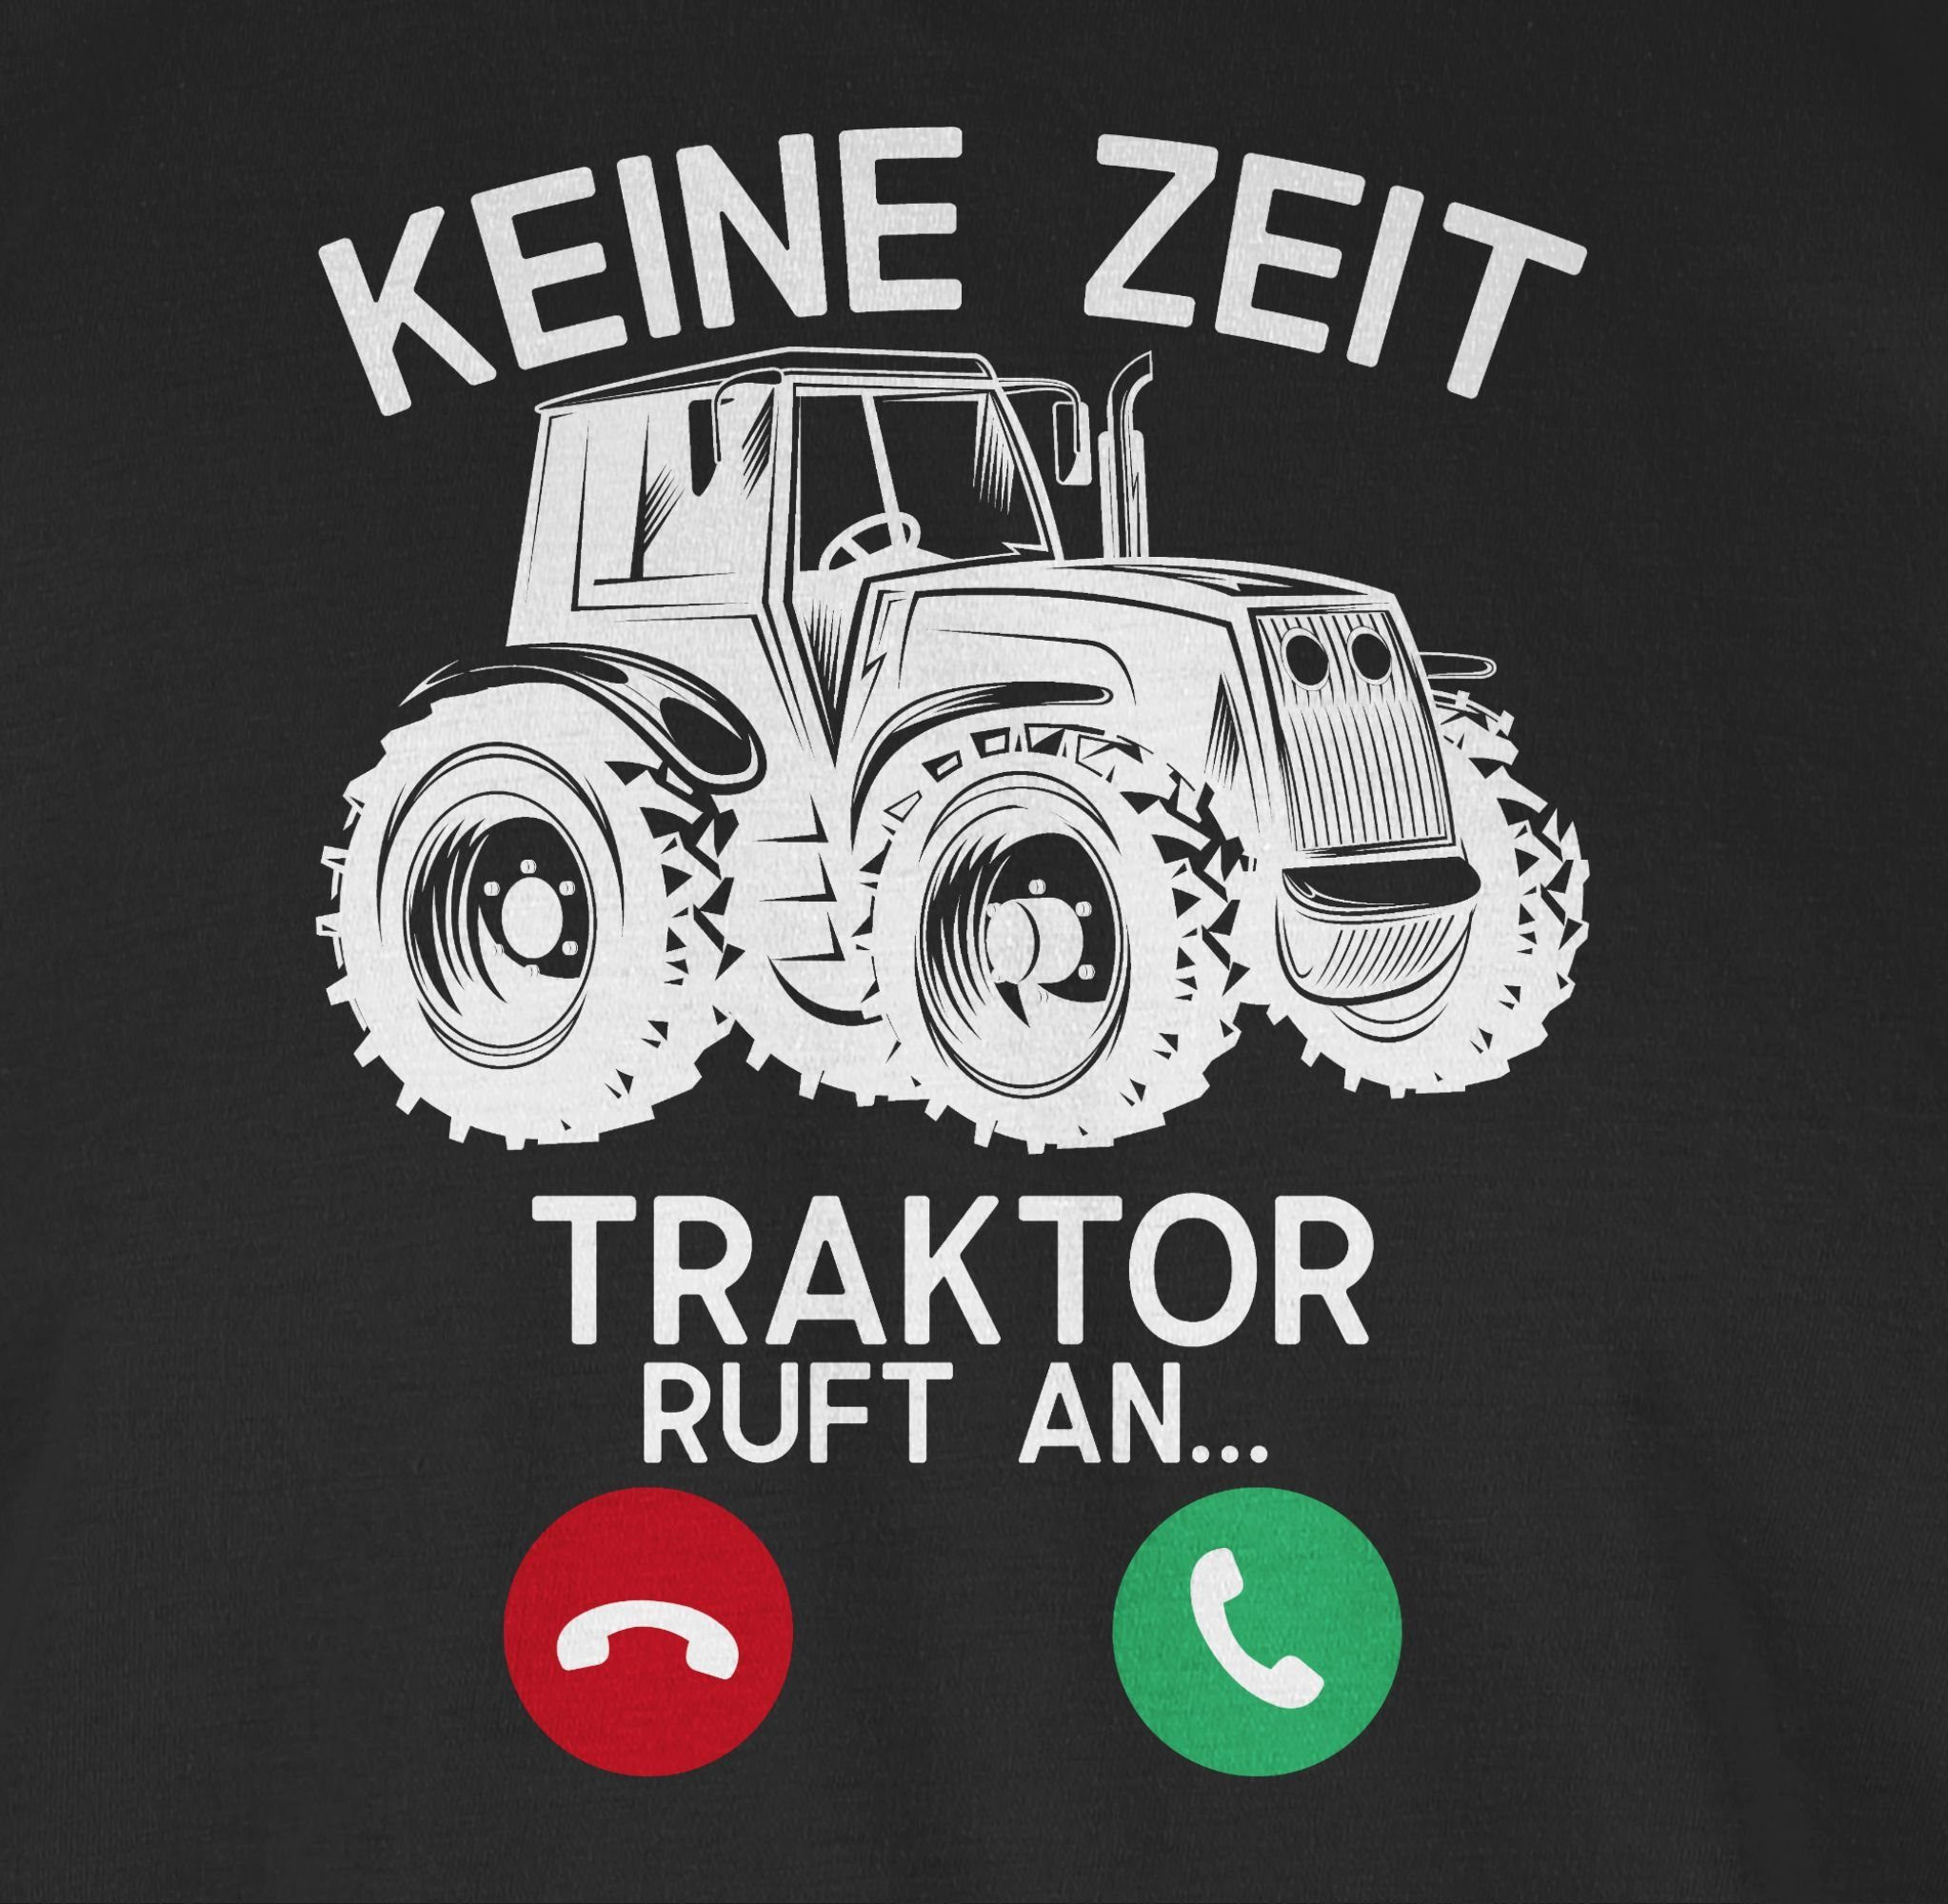 Shirtracer T-Shirt Keine Zeit - Schwarz Traktor ruft weiß an 1 Fahrzeuge 